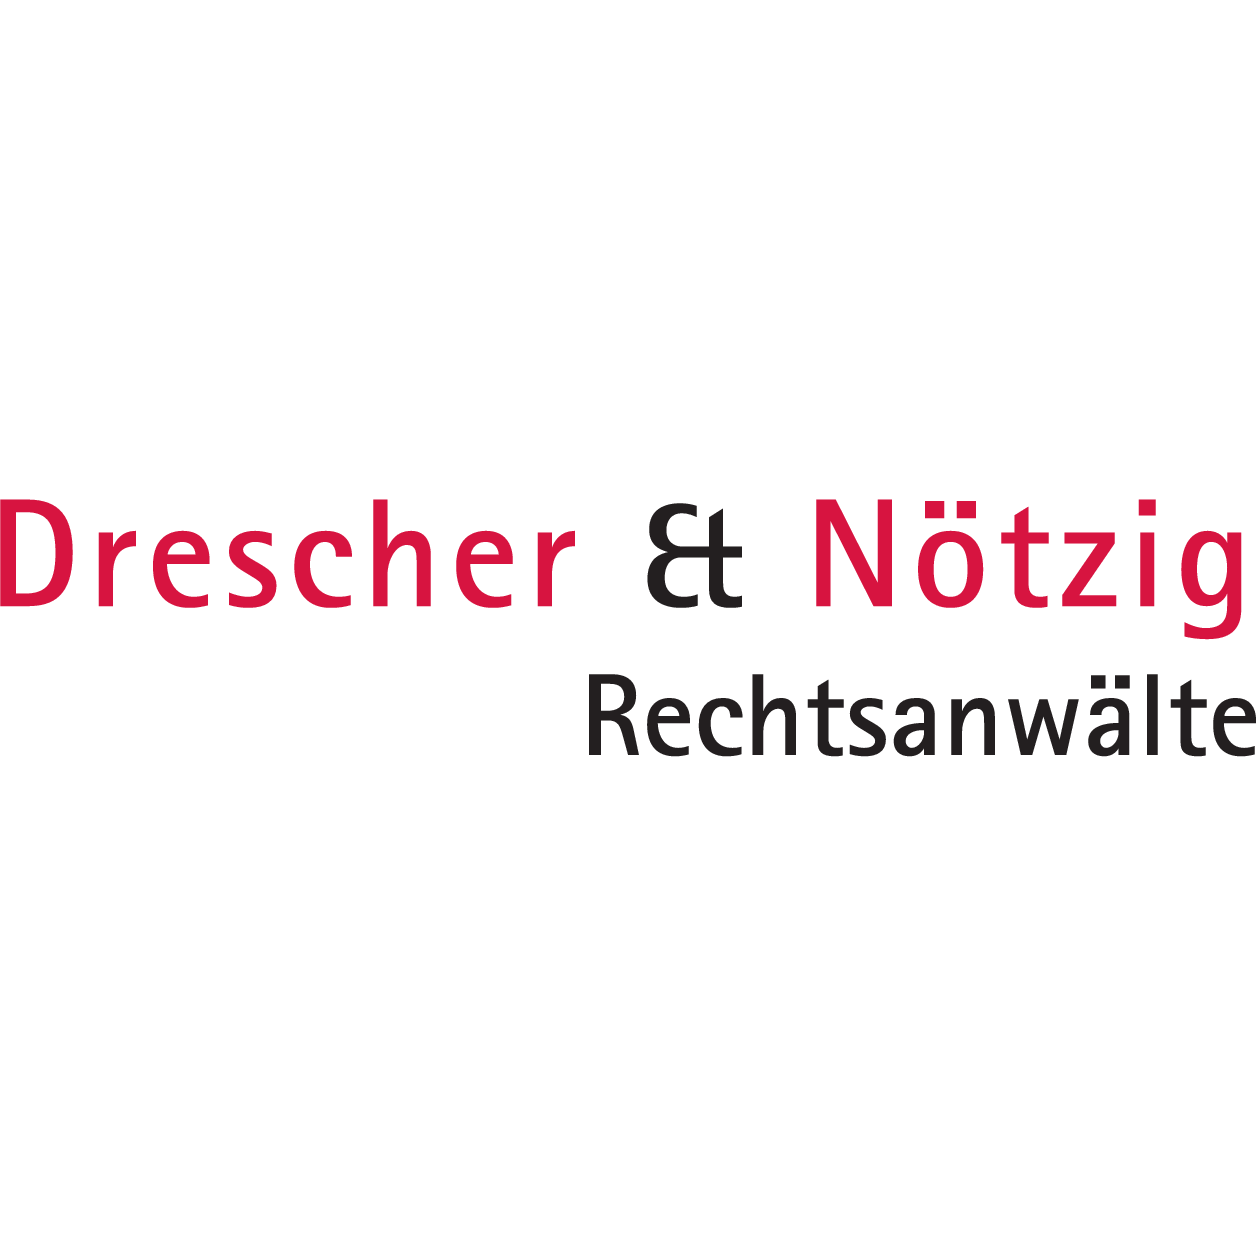 Drescher & Nötzig Rechtsanwälte in Büchenbach - Logo